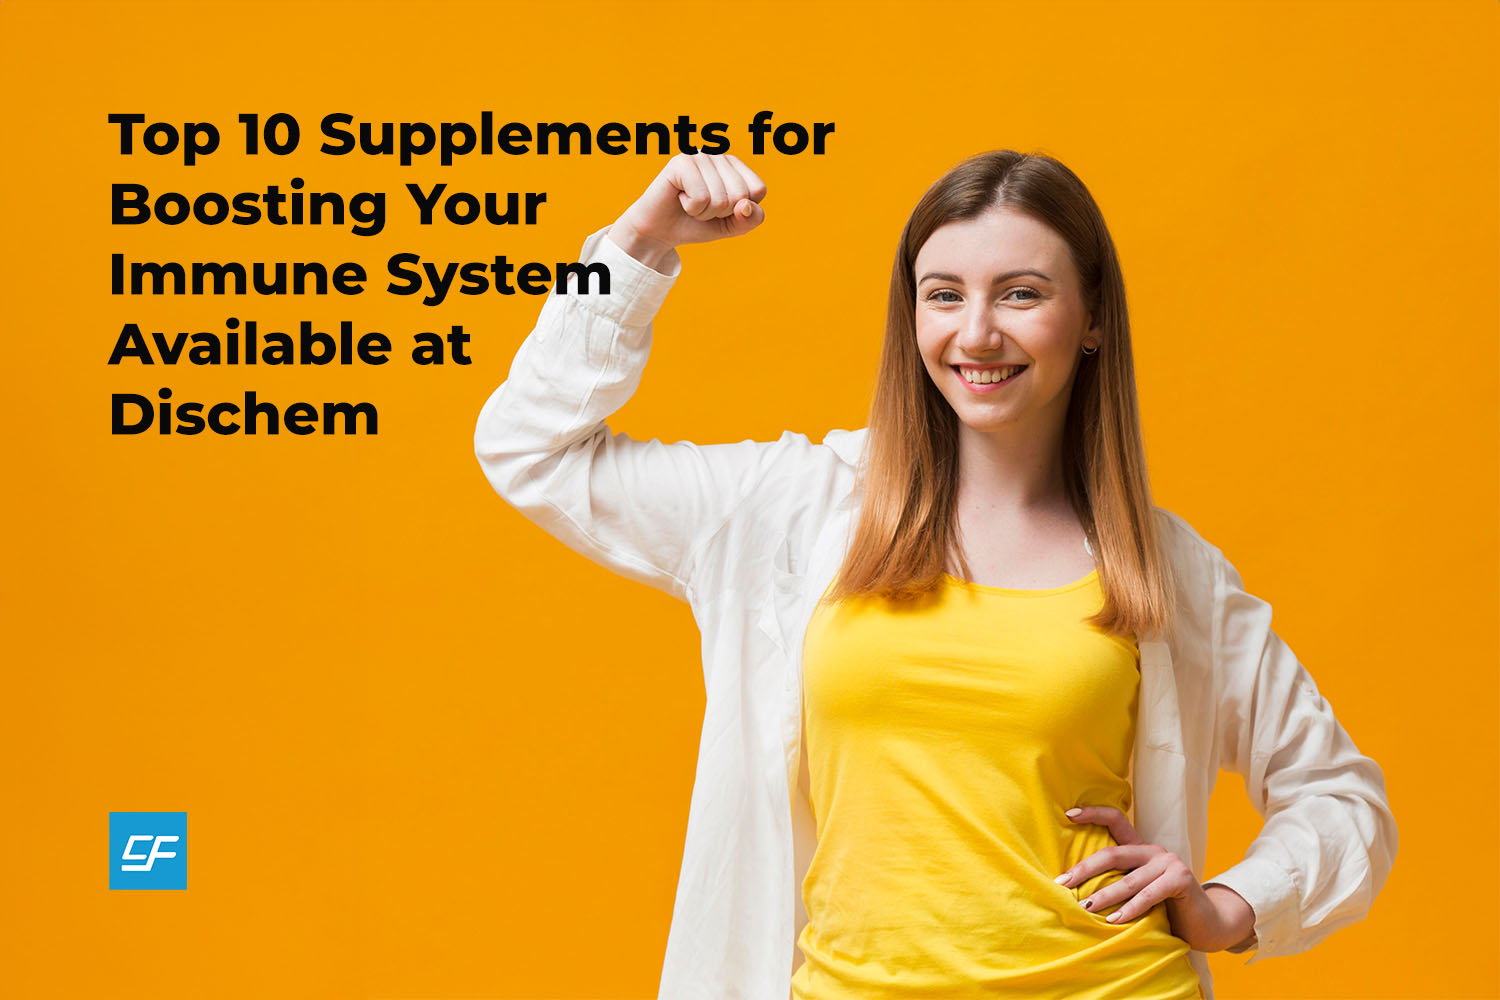 Top 10 Immune-Boosting Supplements at Dischem